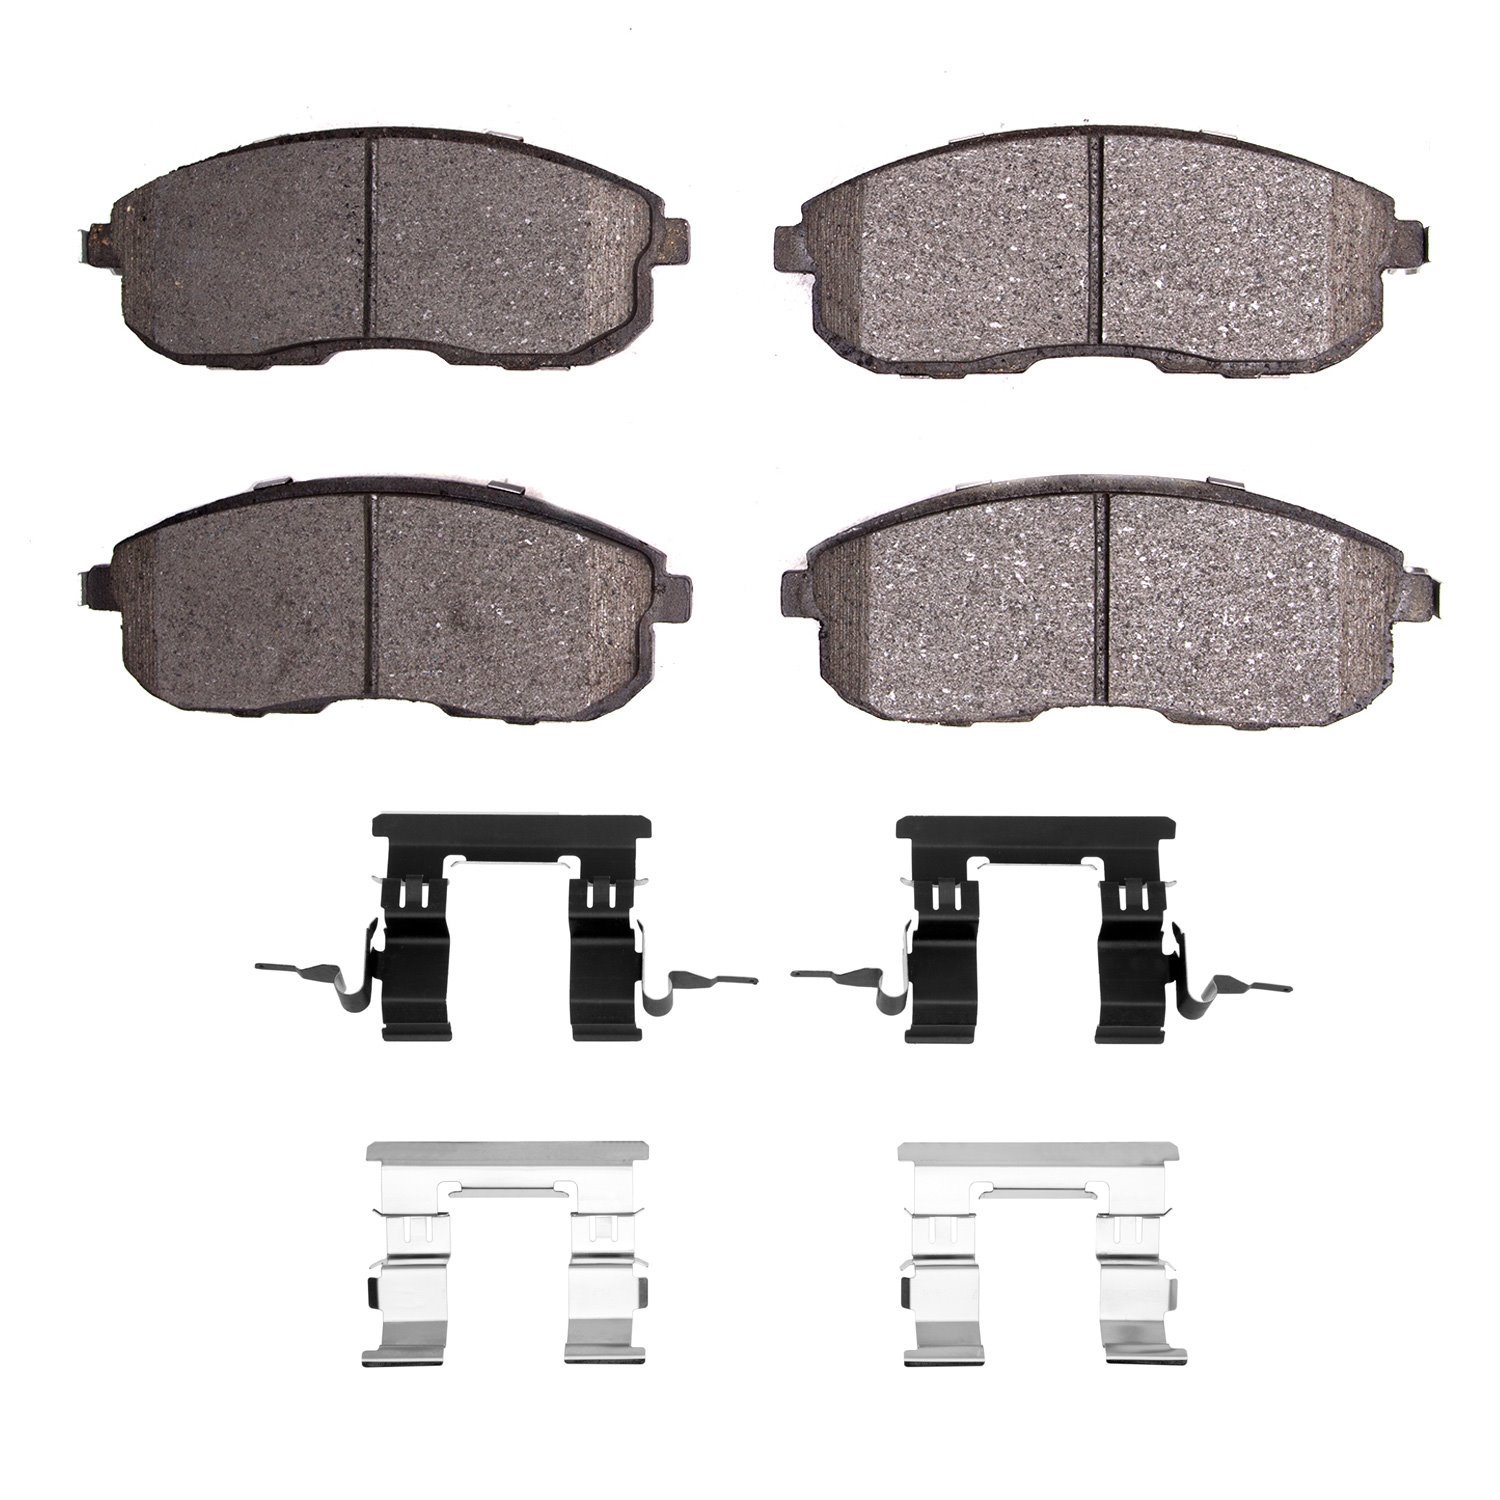 Ceramic Brake Pads & Hardware Kit, 2002-2019 Fits Multiple Makes/Models, Position: Front